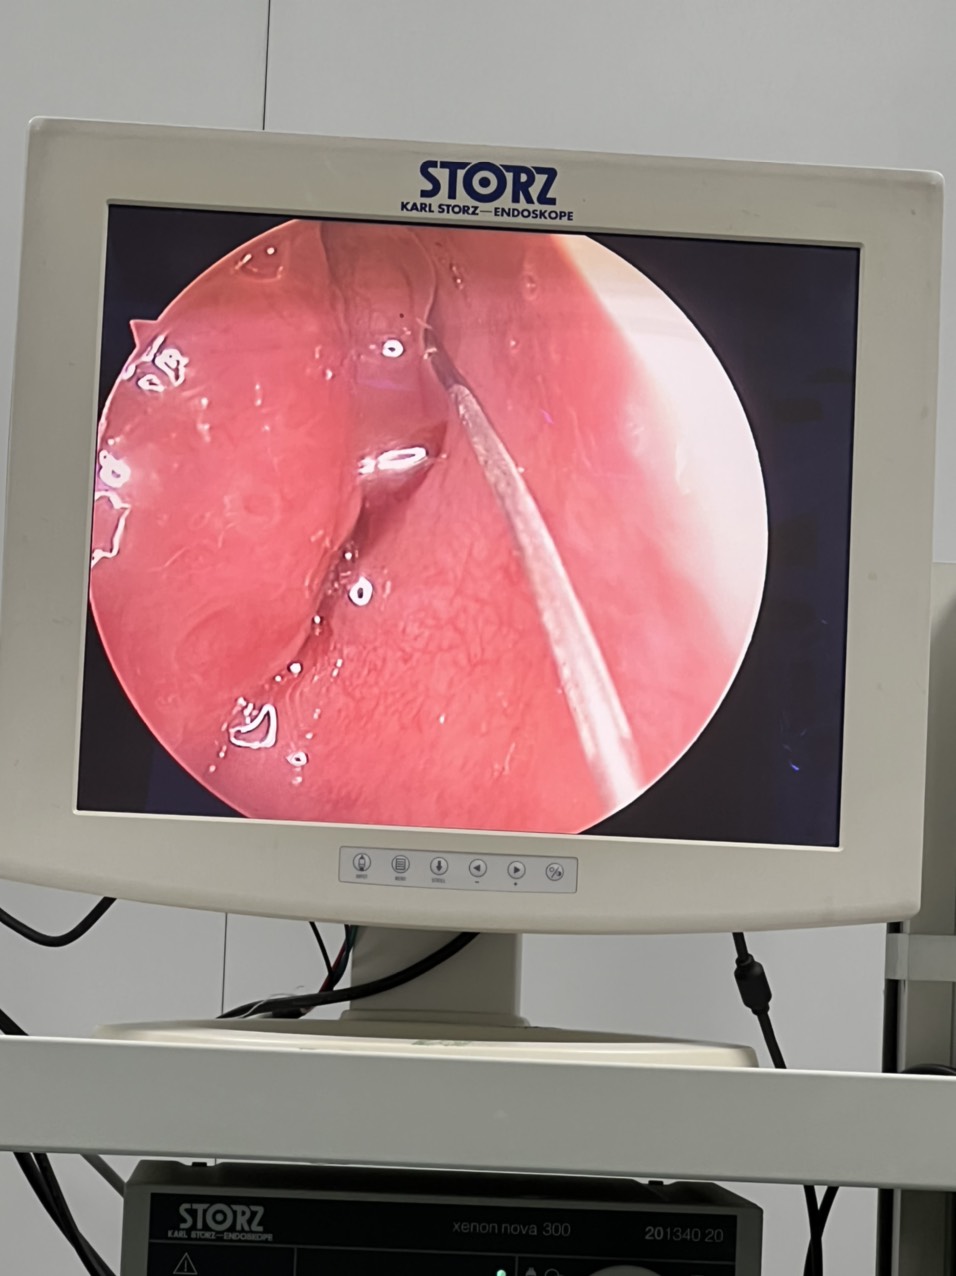 BVĐK tỉnh Sơn La: Đưa vào sử dụng hệ thống máy khoan cắt tốc độ cao trong phẫu thuật nội soi mũi xoang - Ảnh 3.